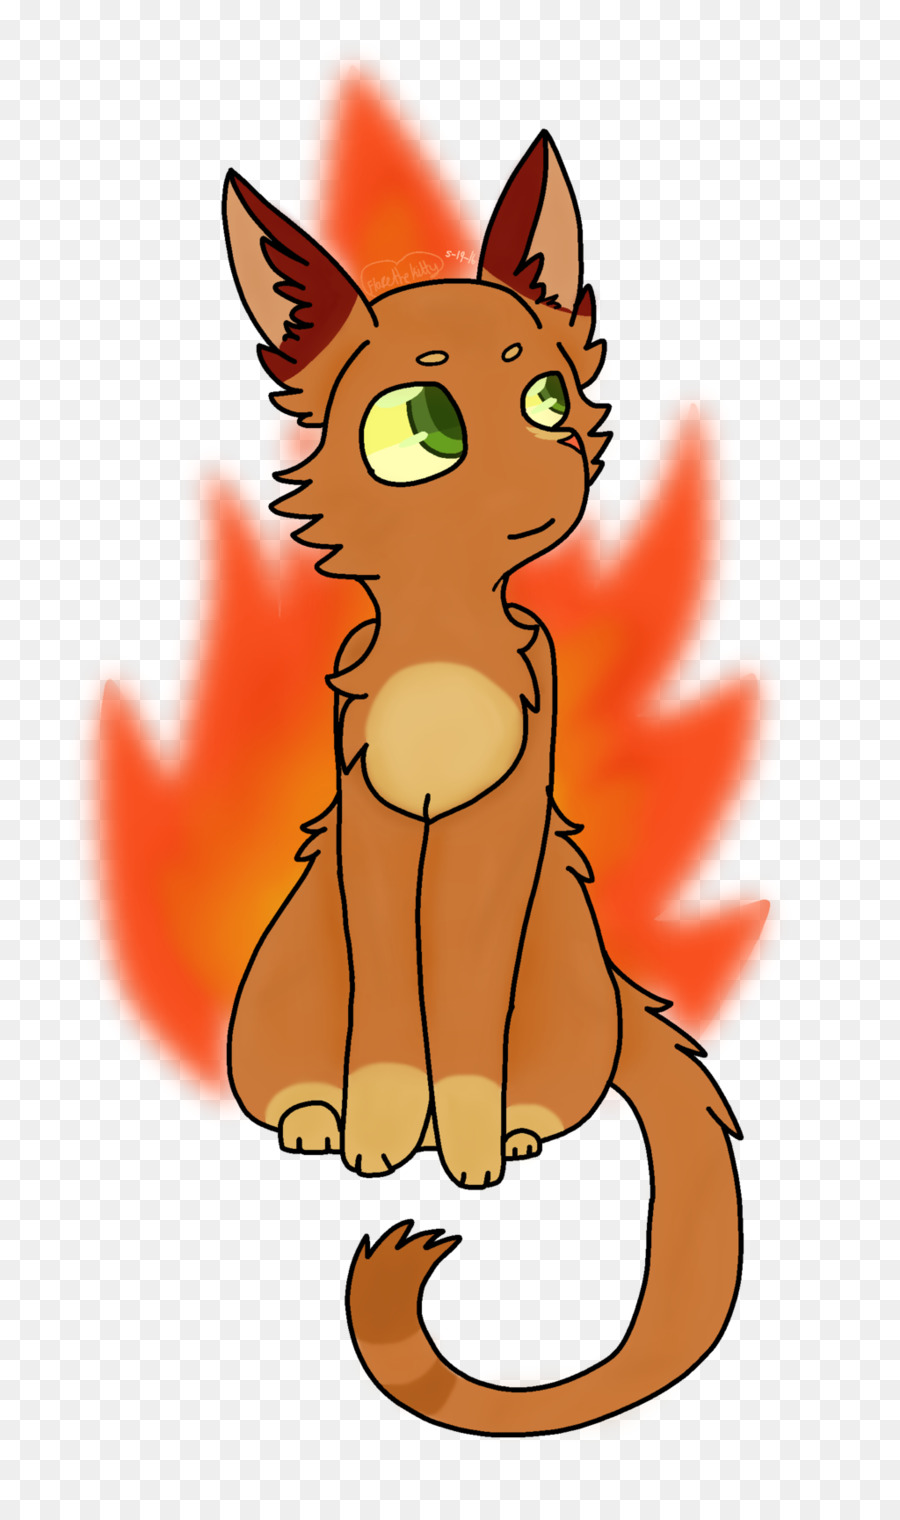 Die schnurrhaare der Katze Roter fox-Kunst-Firestar - Katze